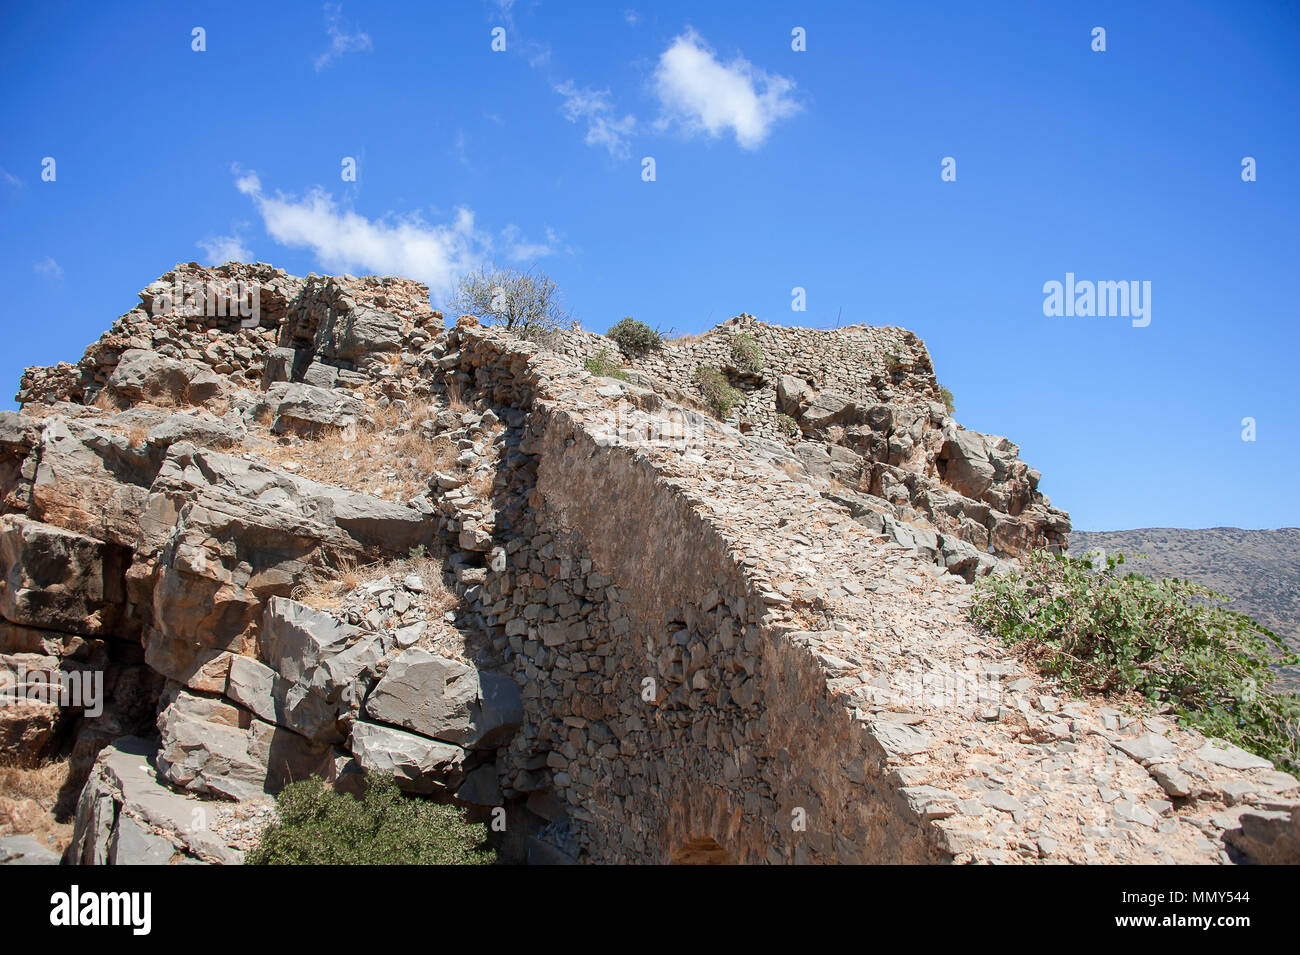 Ancienne forteresse ruines sur l'île de Spinalonga, la Crète, Grèce. Vue panoramique, colline branlante sèche, vert et bleu cactus, ciel nuageux Banque D'Images